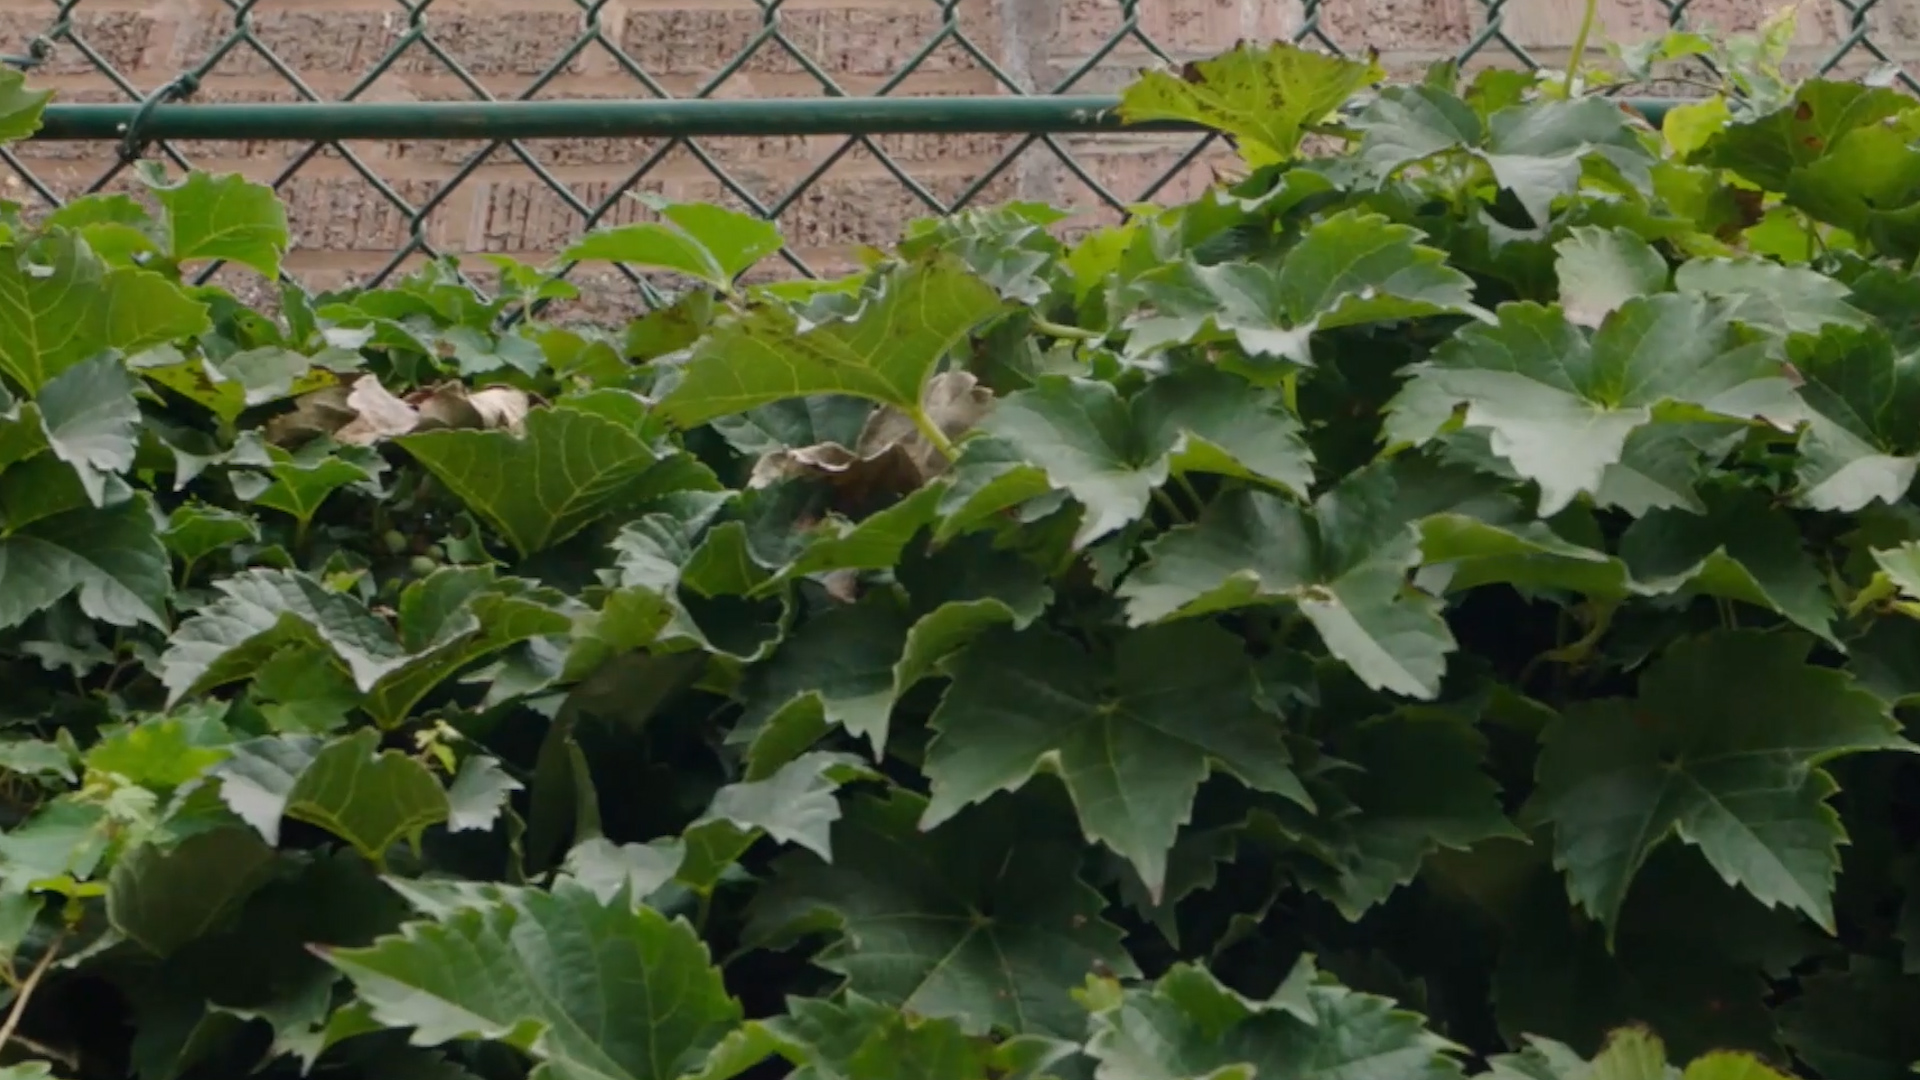 Dan Kolko takes a closer look at the ivy at Wrigley Field 